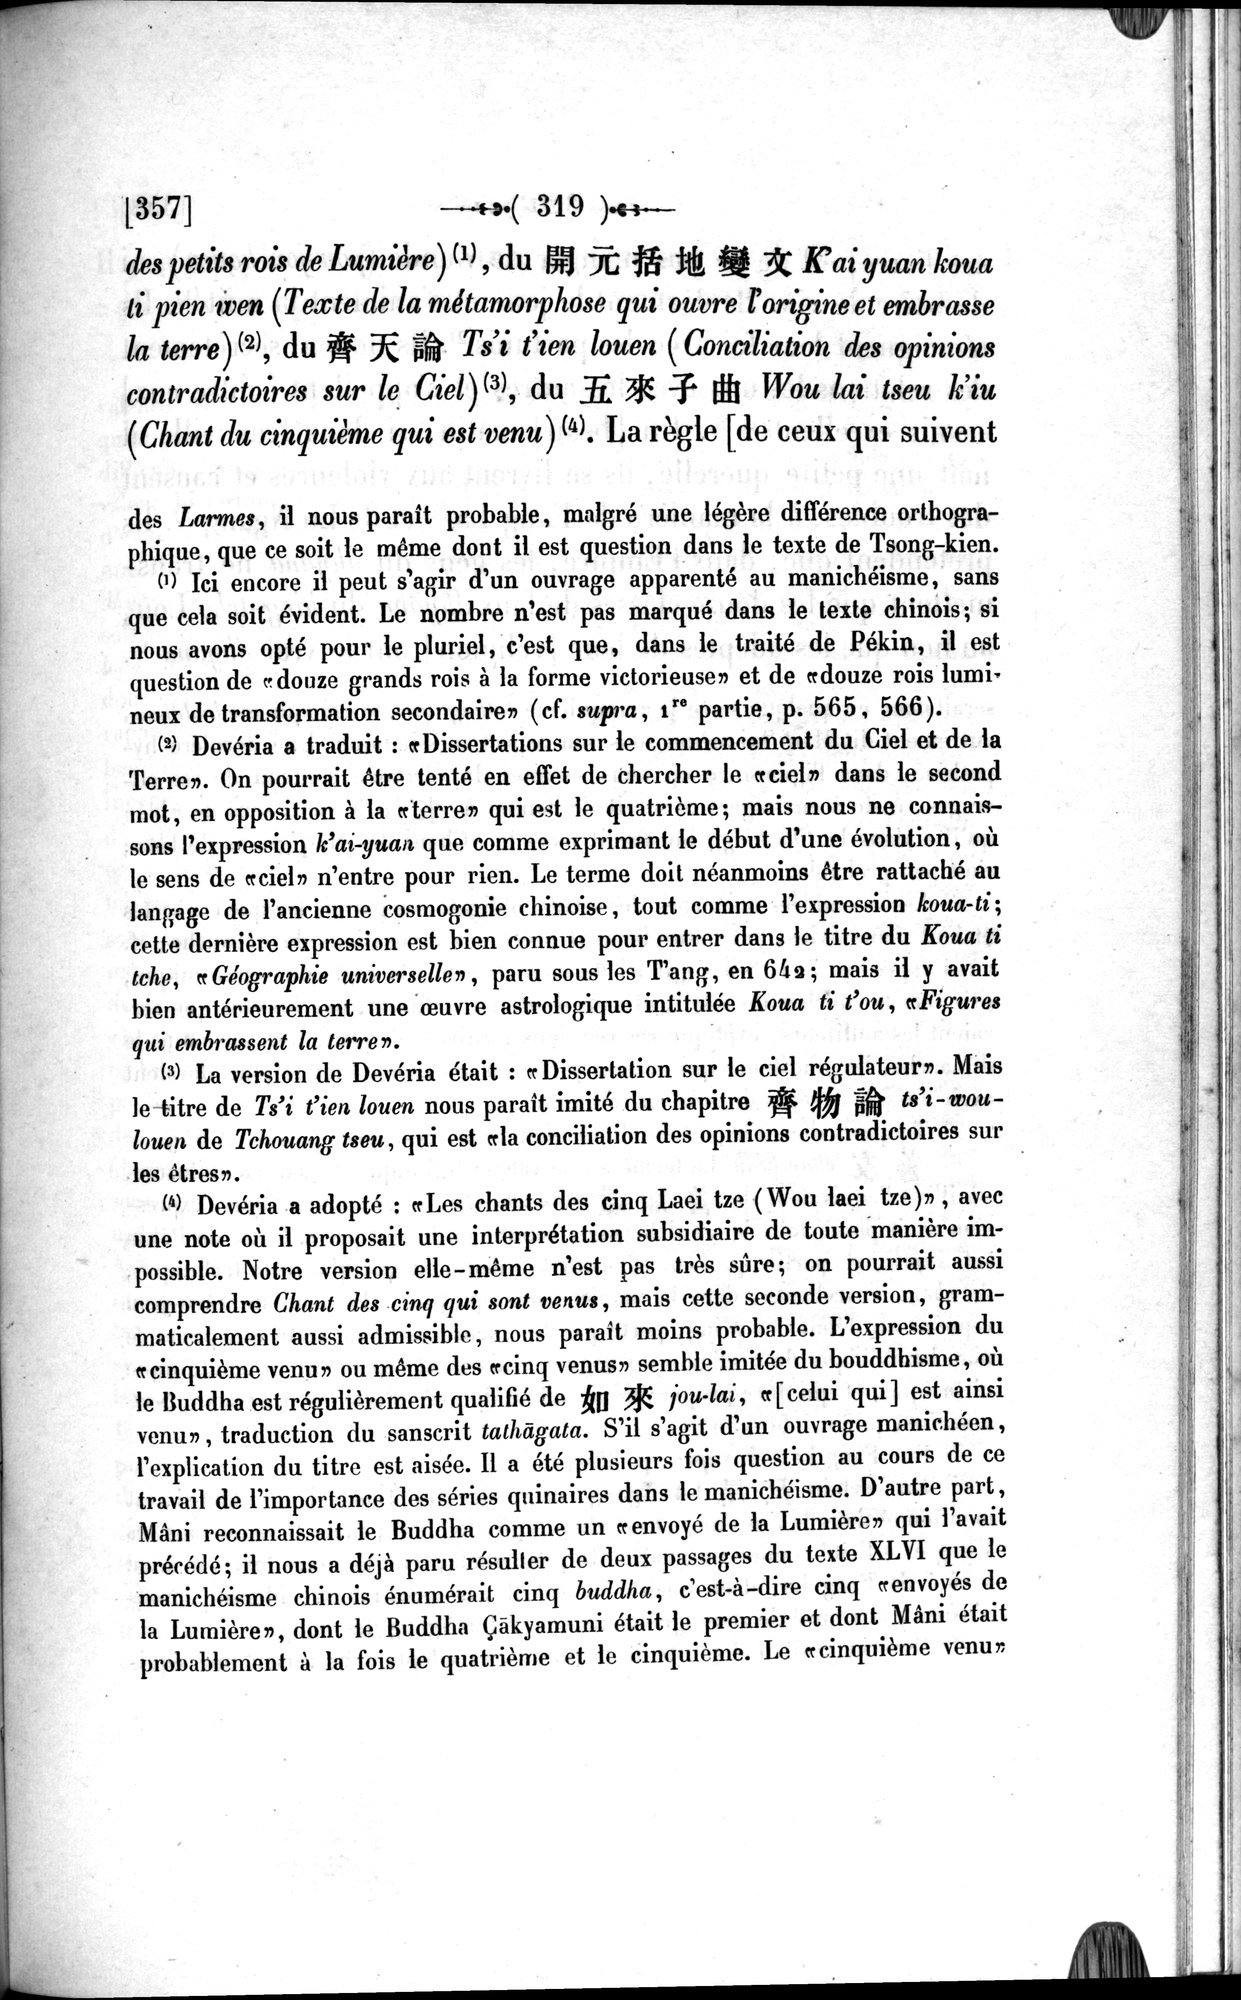 Un traité manichéen retrouvé en Chine : vol.1 / 329 ページ（白黒高解像度画像）